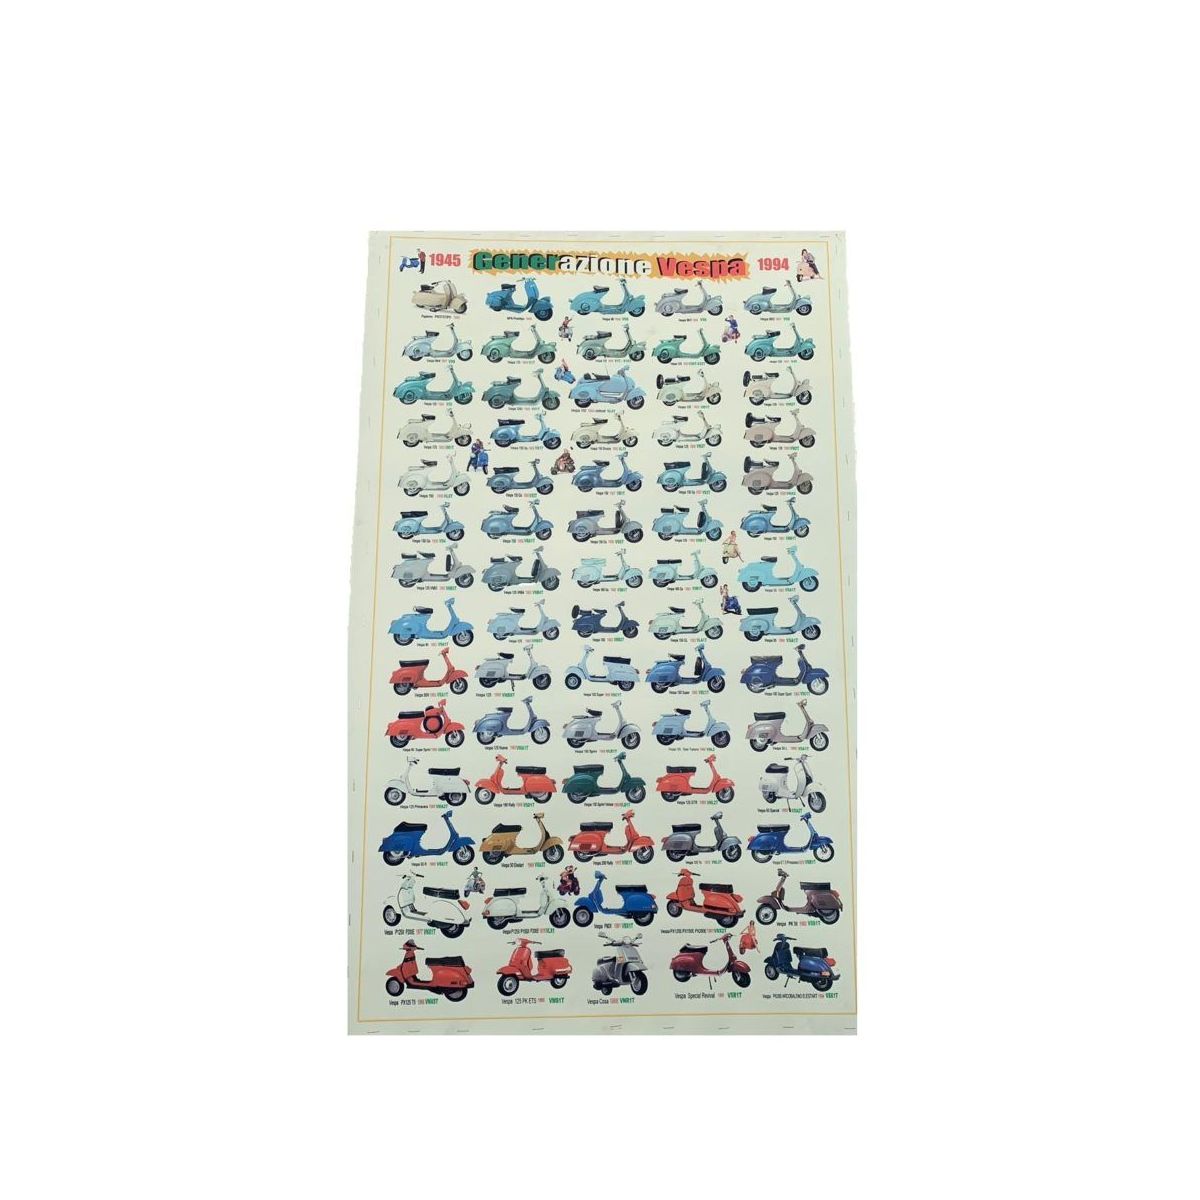 Poster Generazione Vespa 70 modelli Vintage 63×95 cartoncino colore paglierino